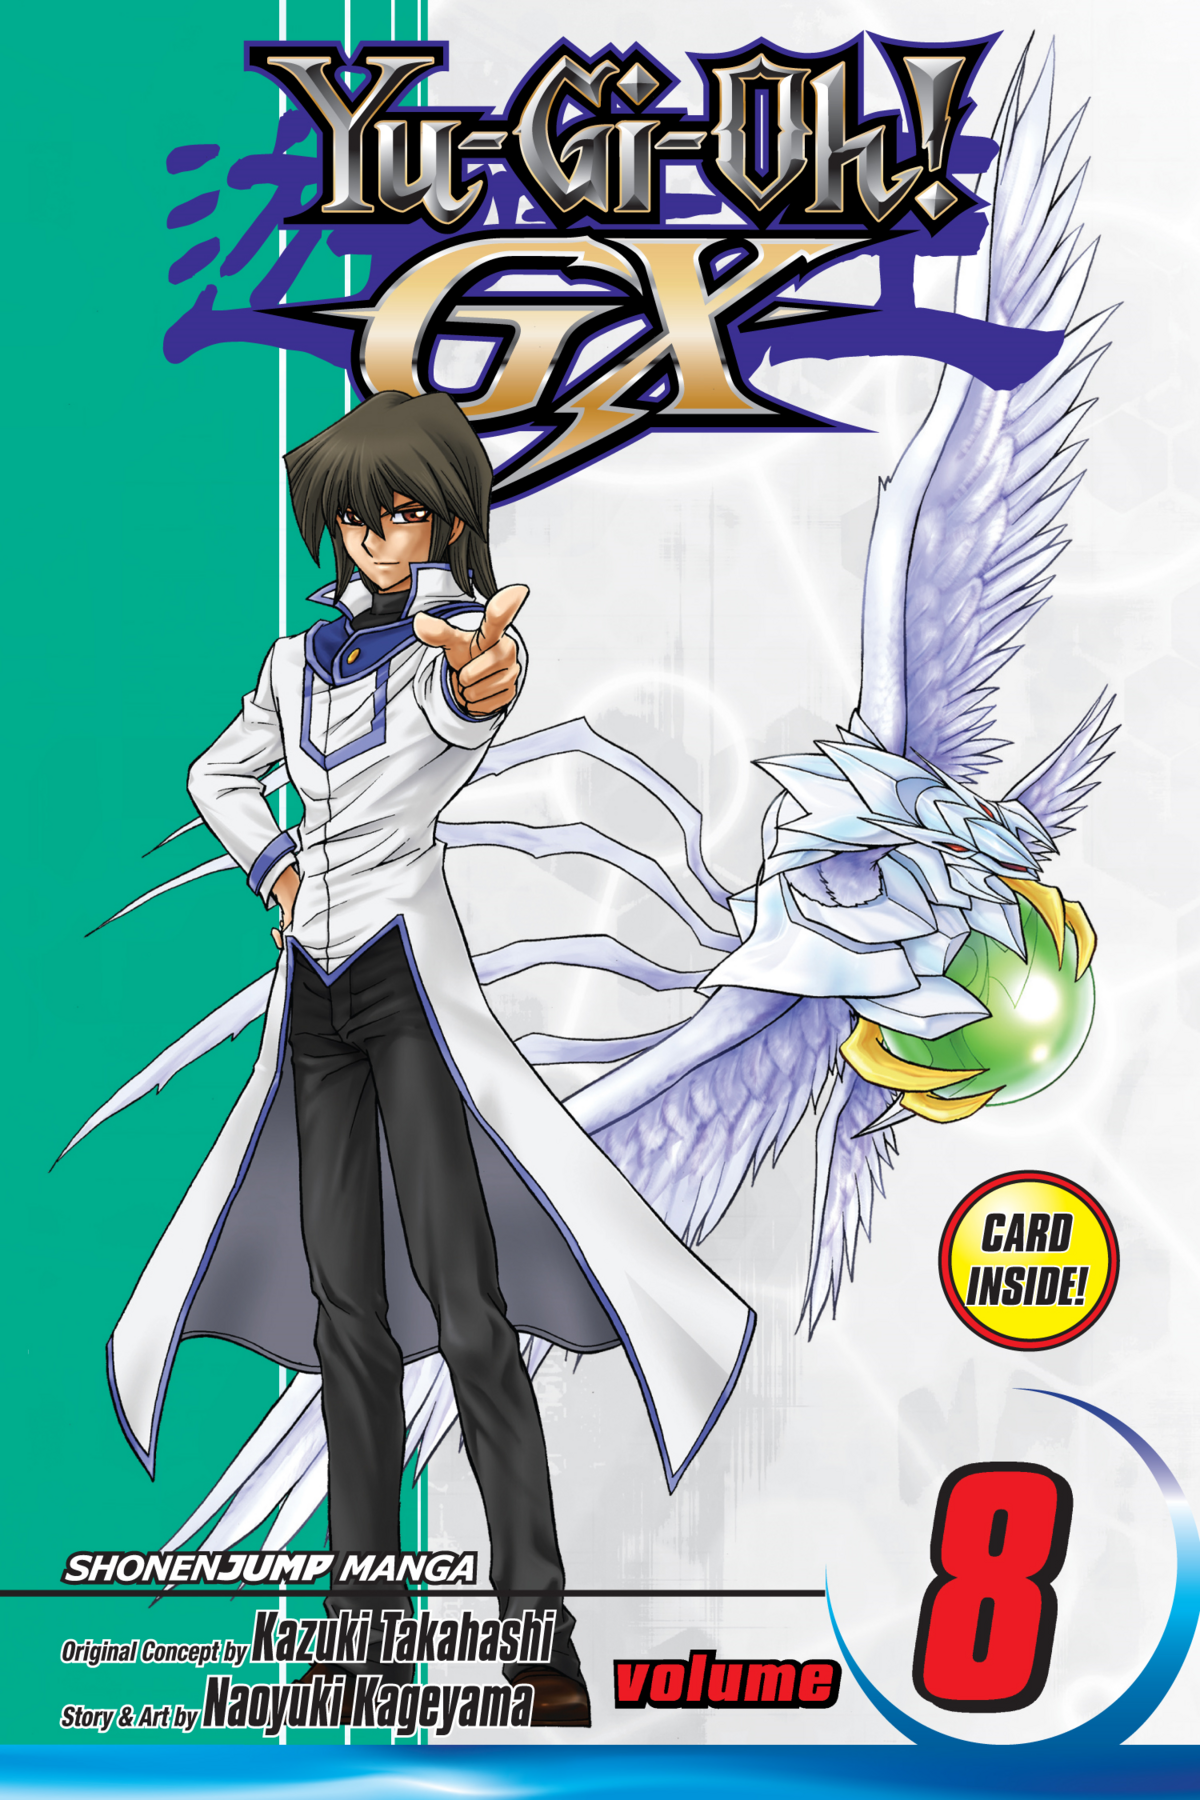 Yu-Gi-Oh! GX Volume 8 promotional card - Yugipedia - Yu-Gi-Oh! wiki